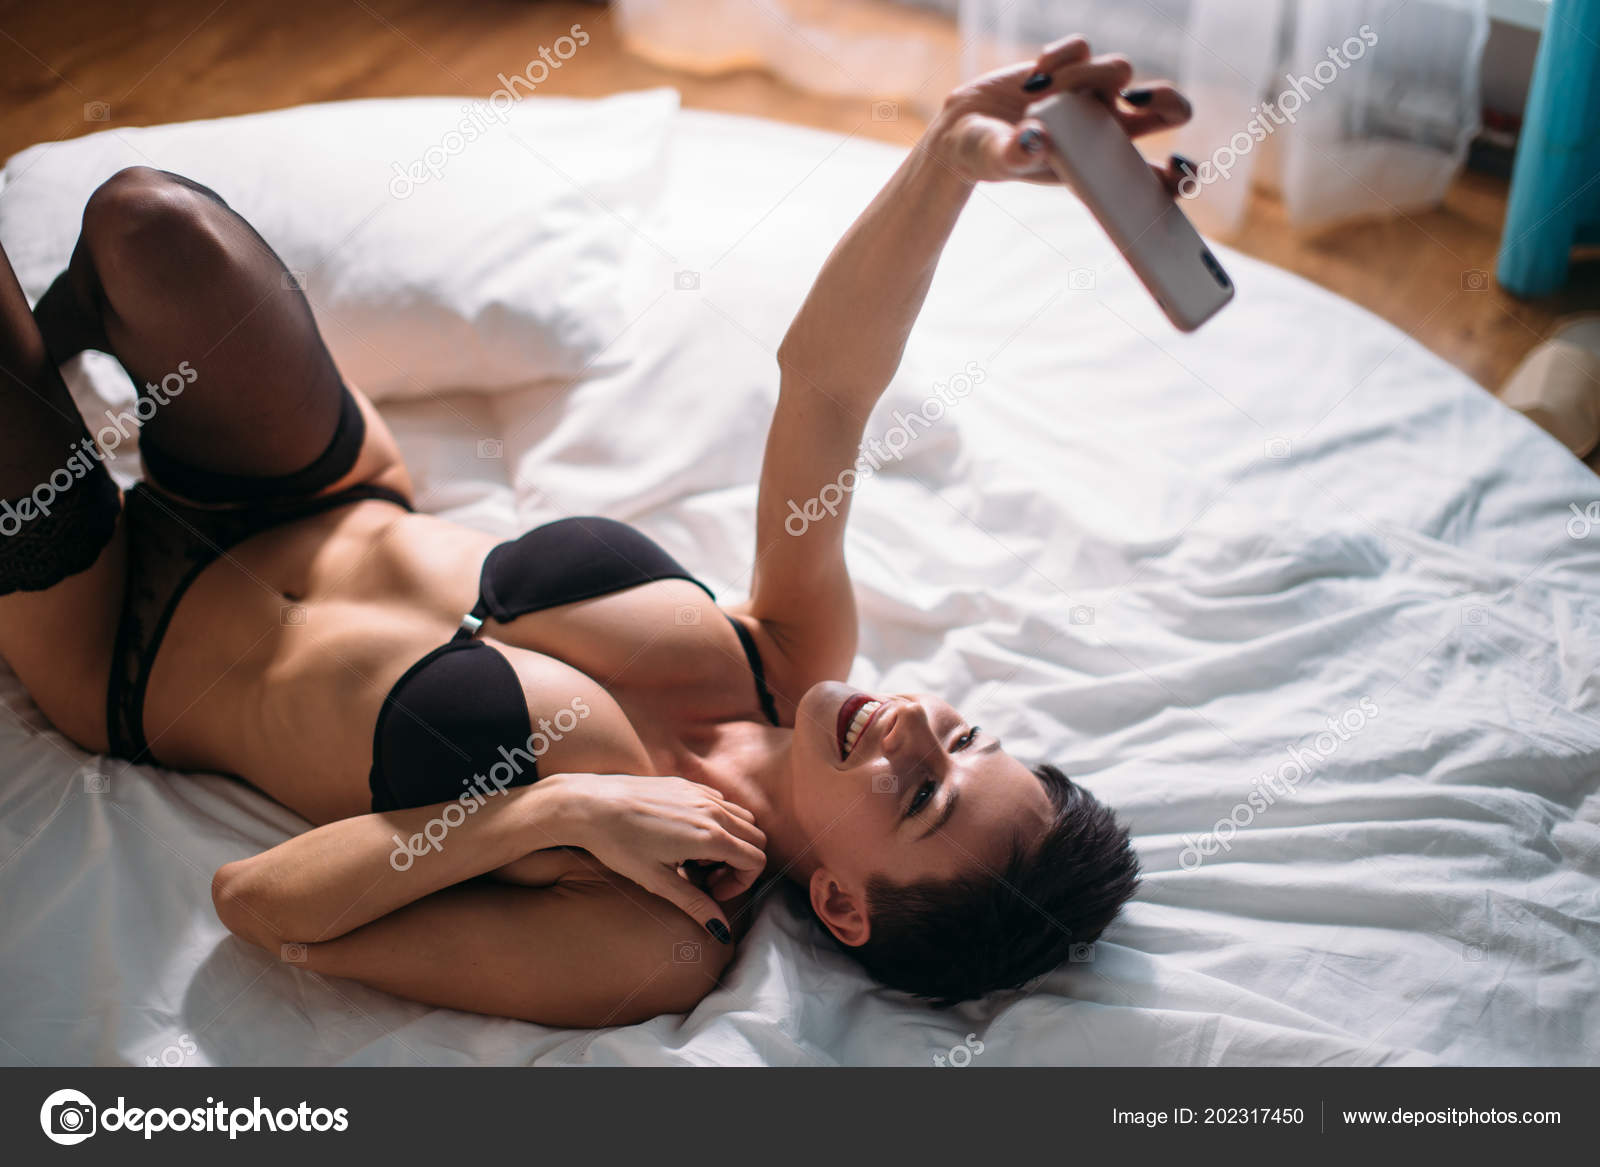 galleries girl seductive bed selfies